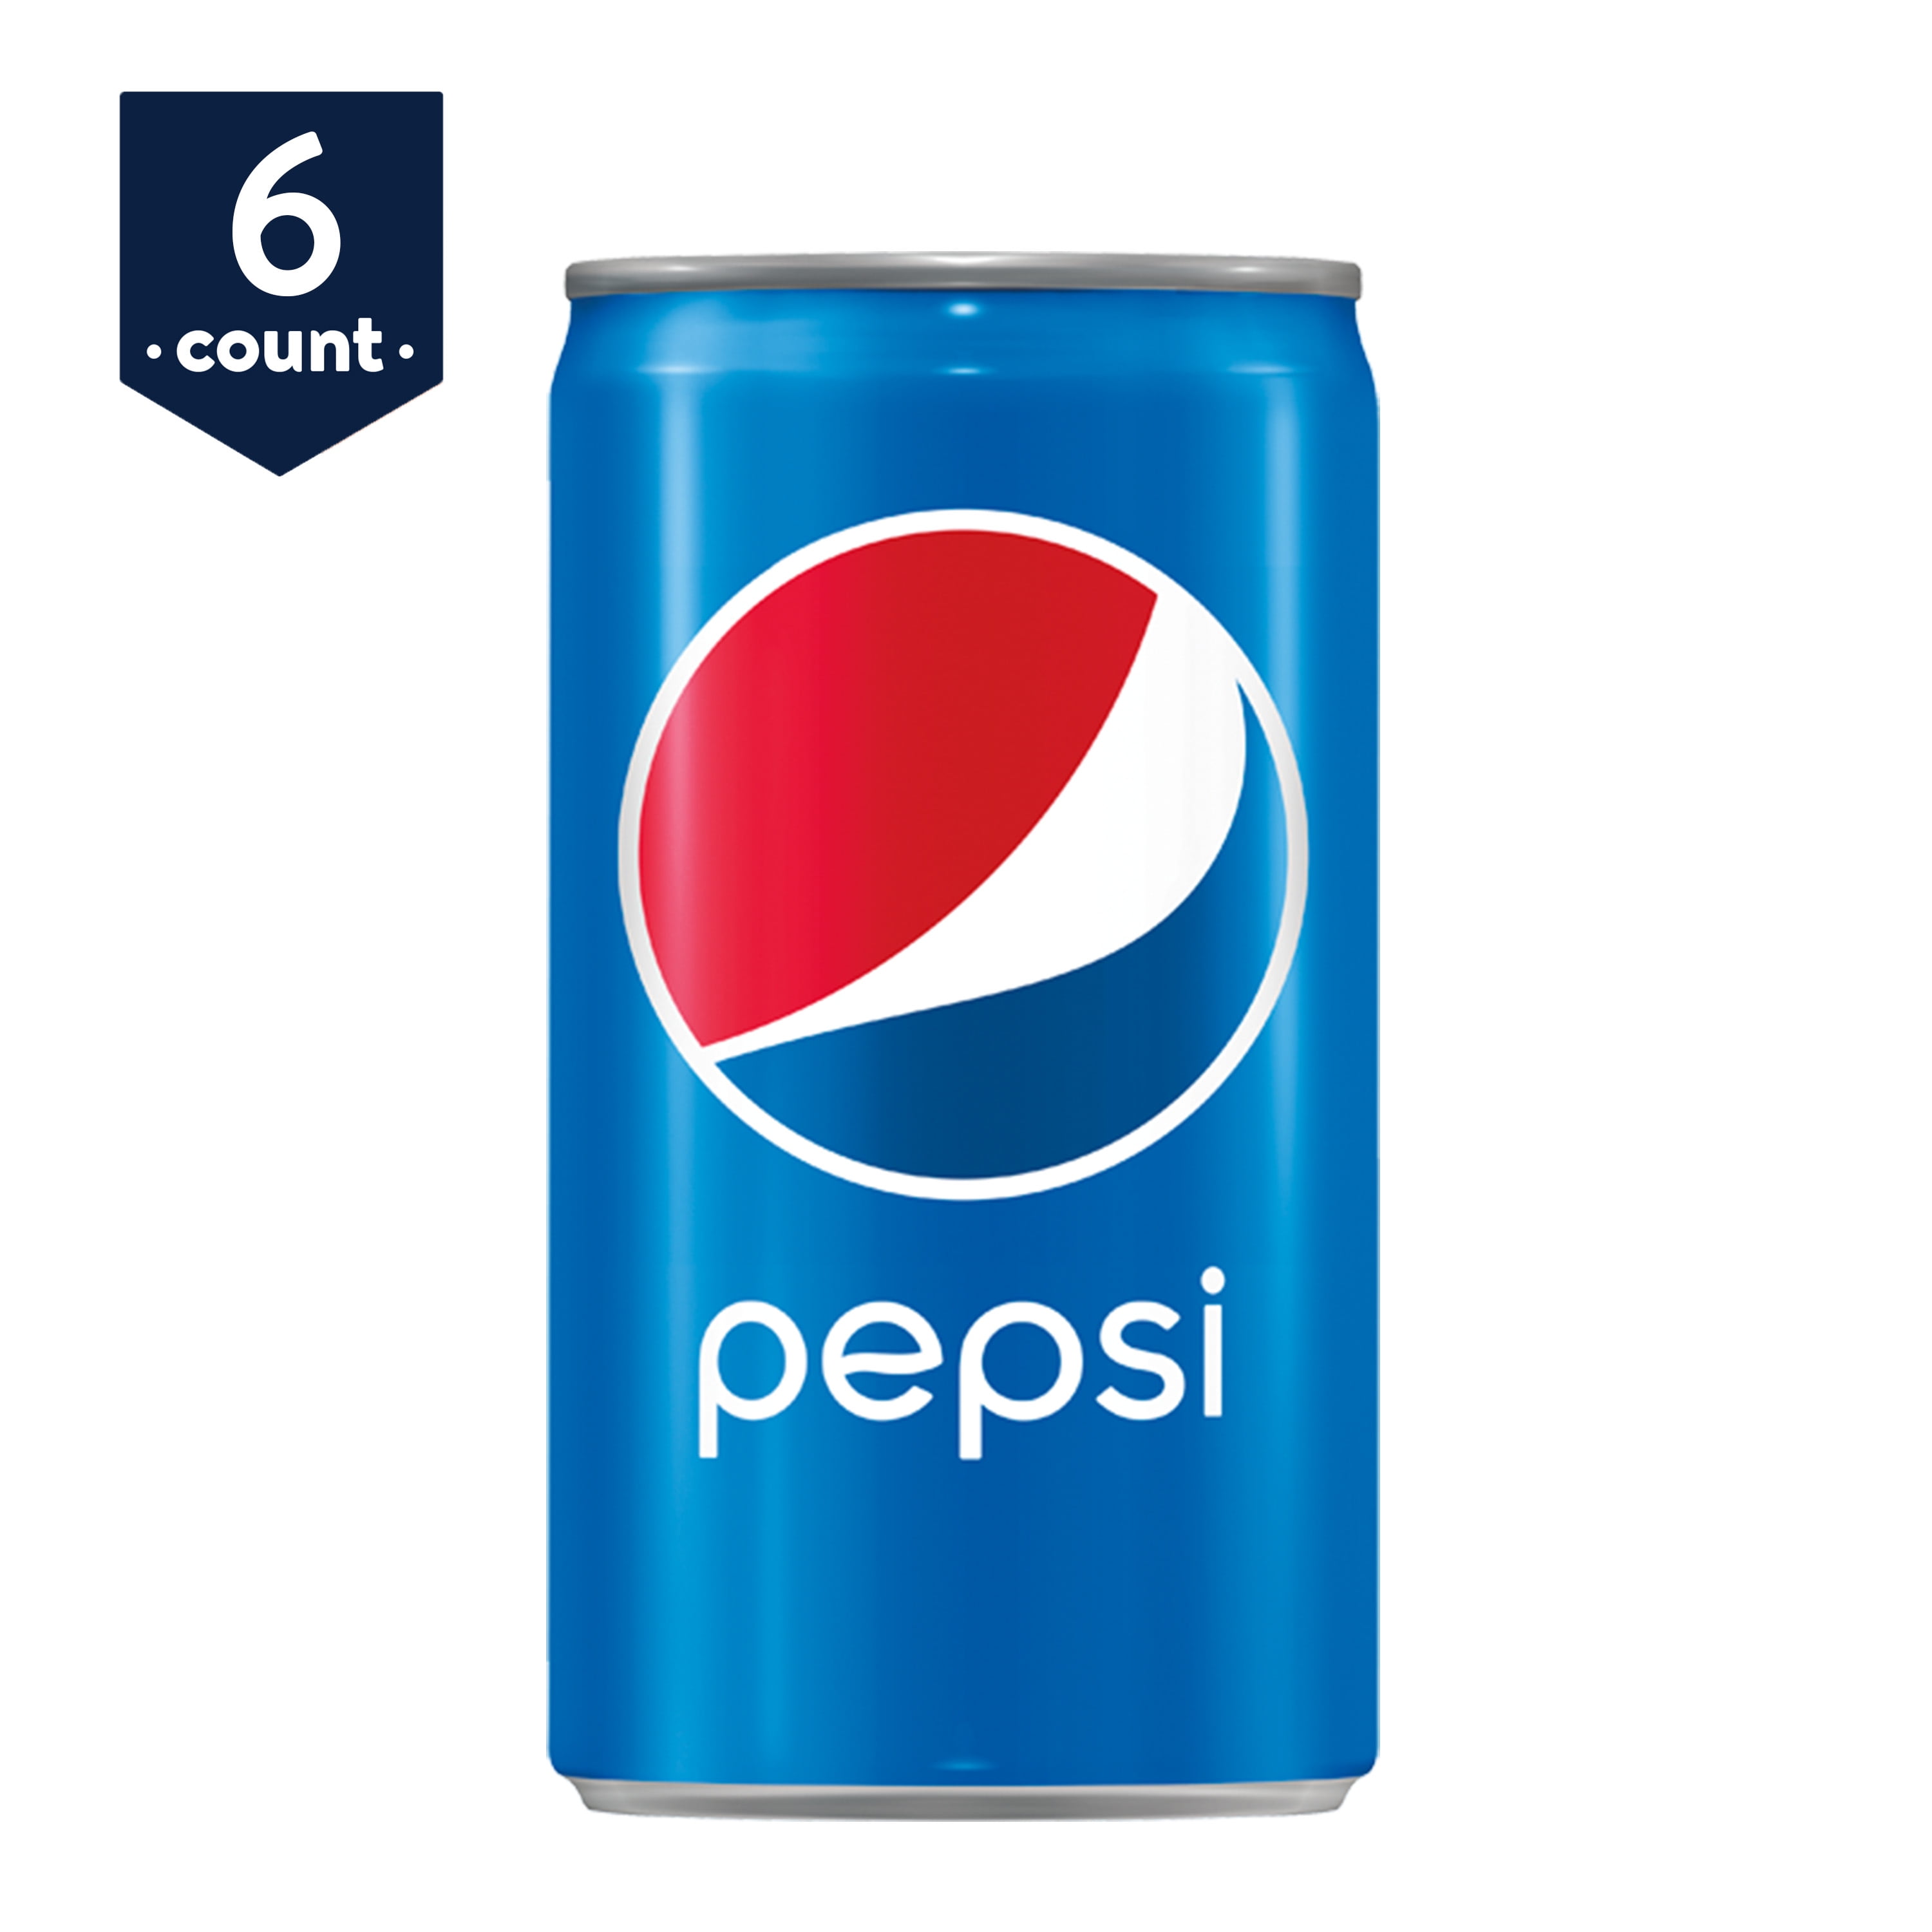 Pepsi Soda  Mini  Cans  7 5 oz Cans  6 Count Walmart com